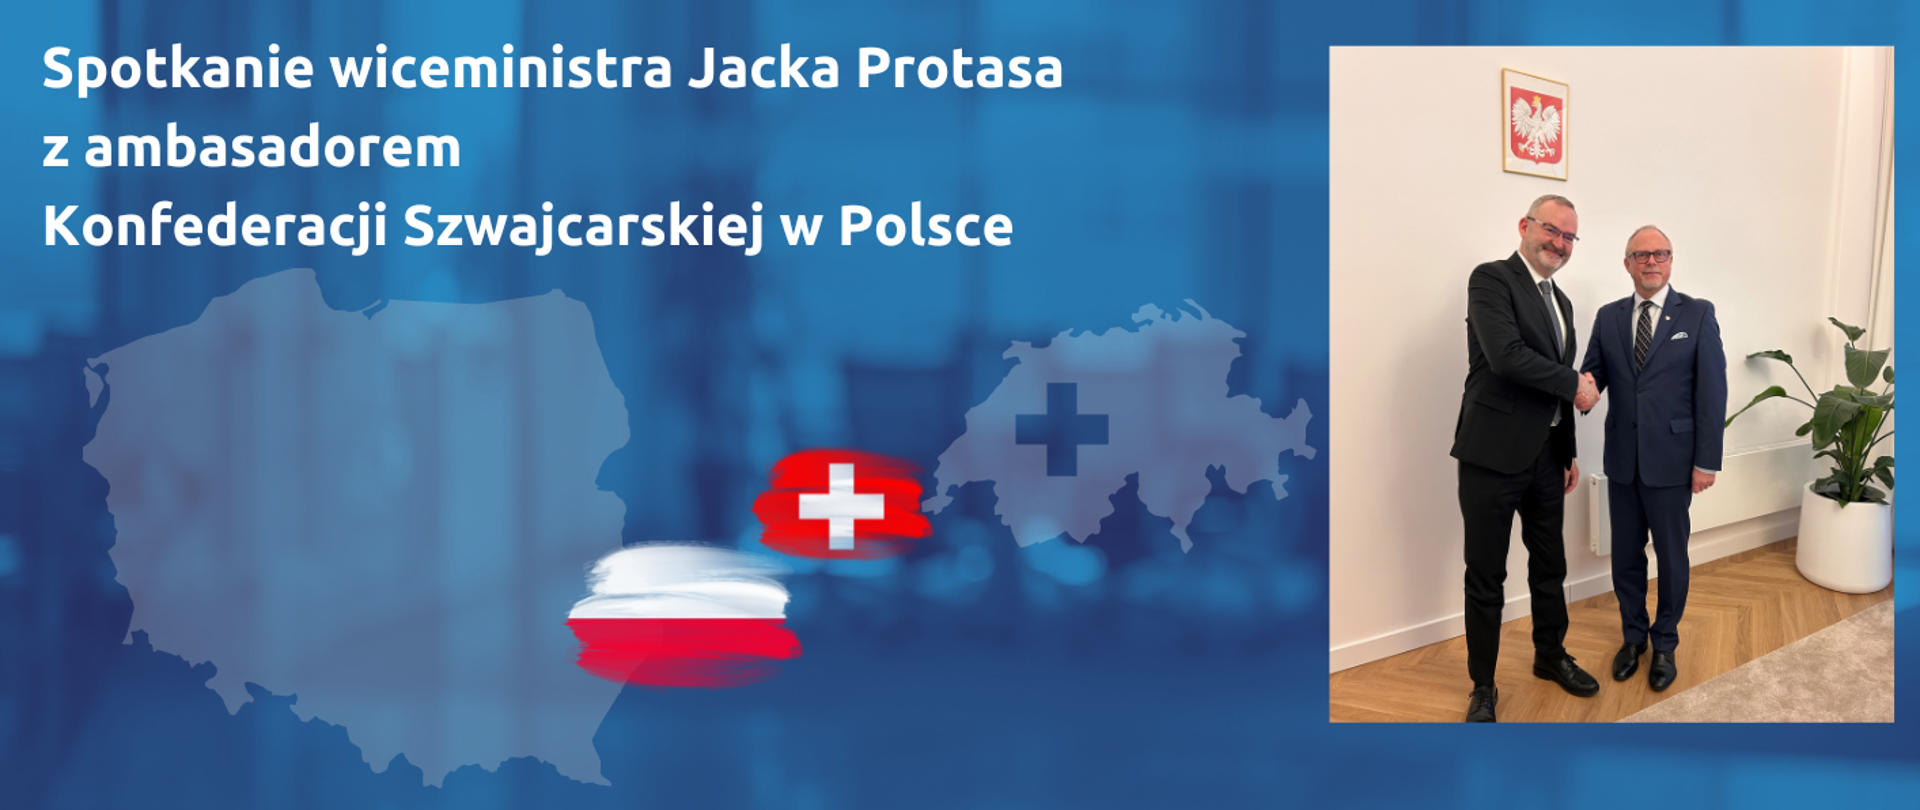 Na grafice zdjęcie wiceministra Jacka Protasa podającego rękę ambasadorowi Szwajcarii oraz napis "Spotkanie wiceministra Jacka Protasa z ambasadorem Konfederacji Szwajcarskiej w Polsce